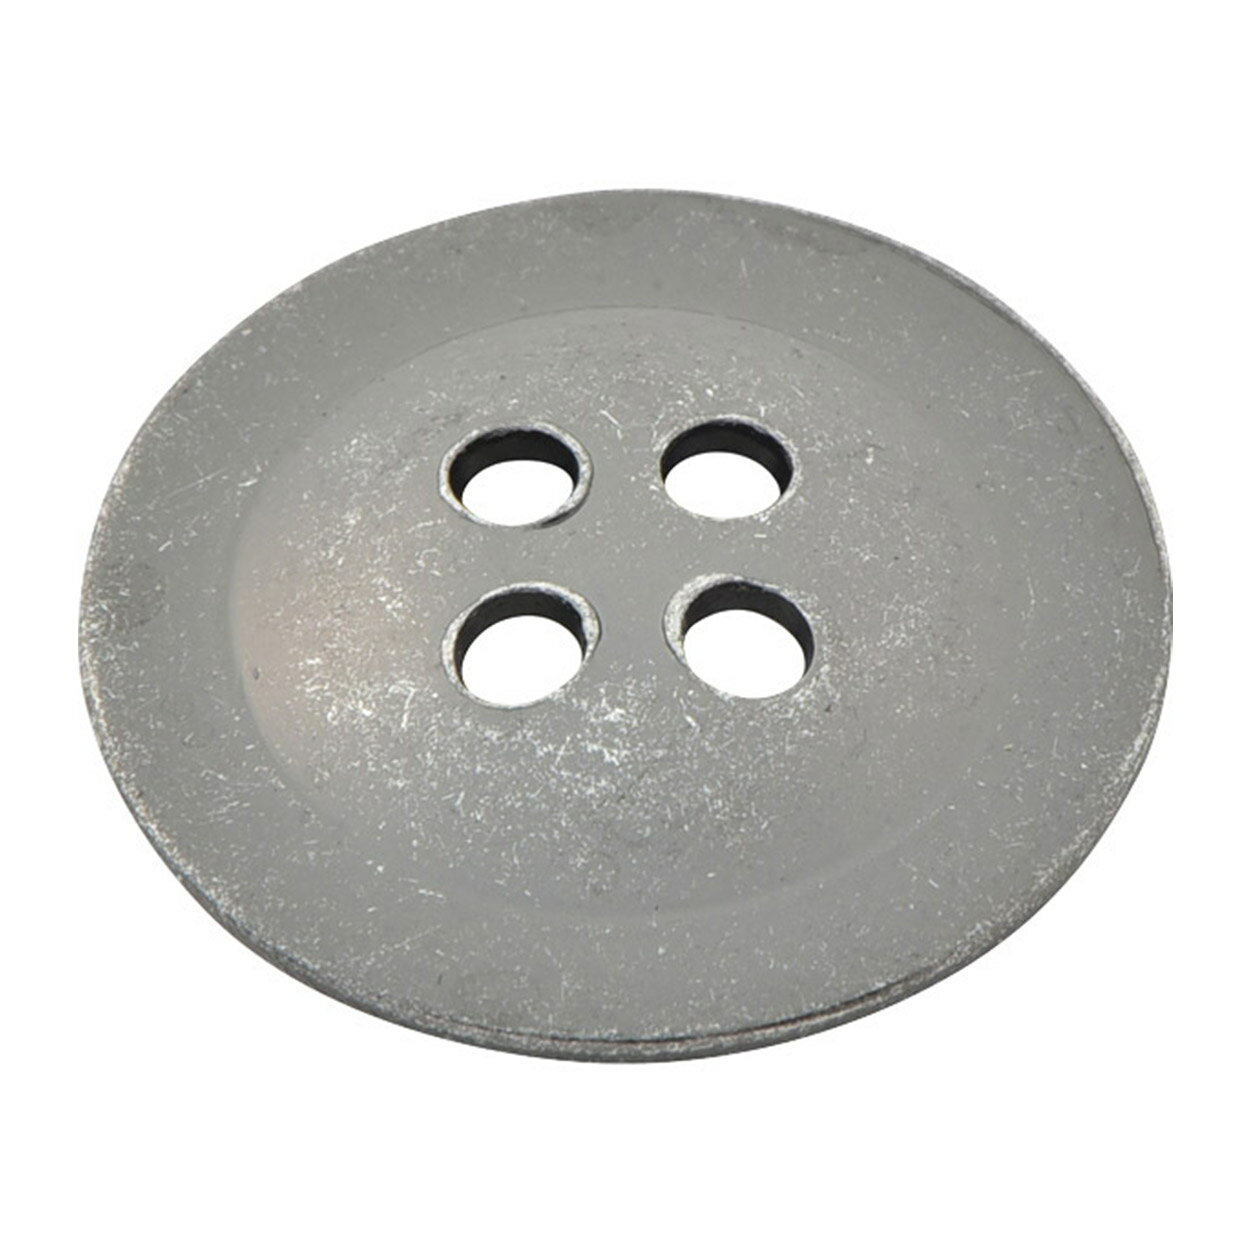 ボタン 『メタル 真鍮ボタン 1.8cm OS 10080721-OS』 ベルアートオンダ 2